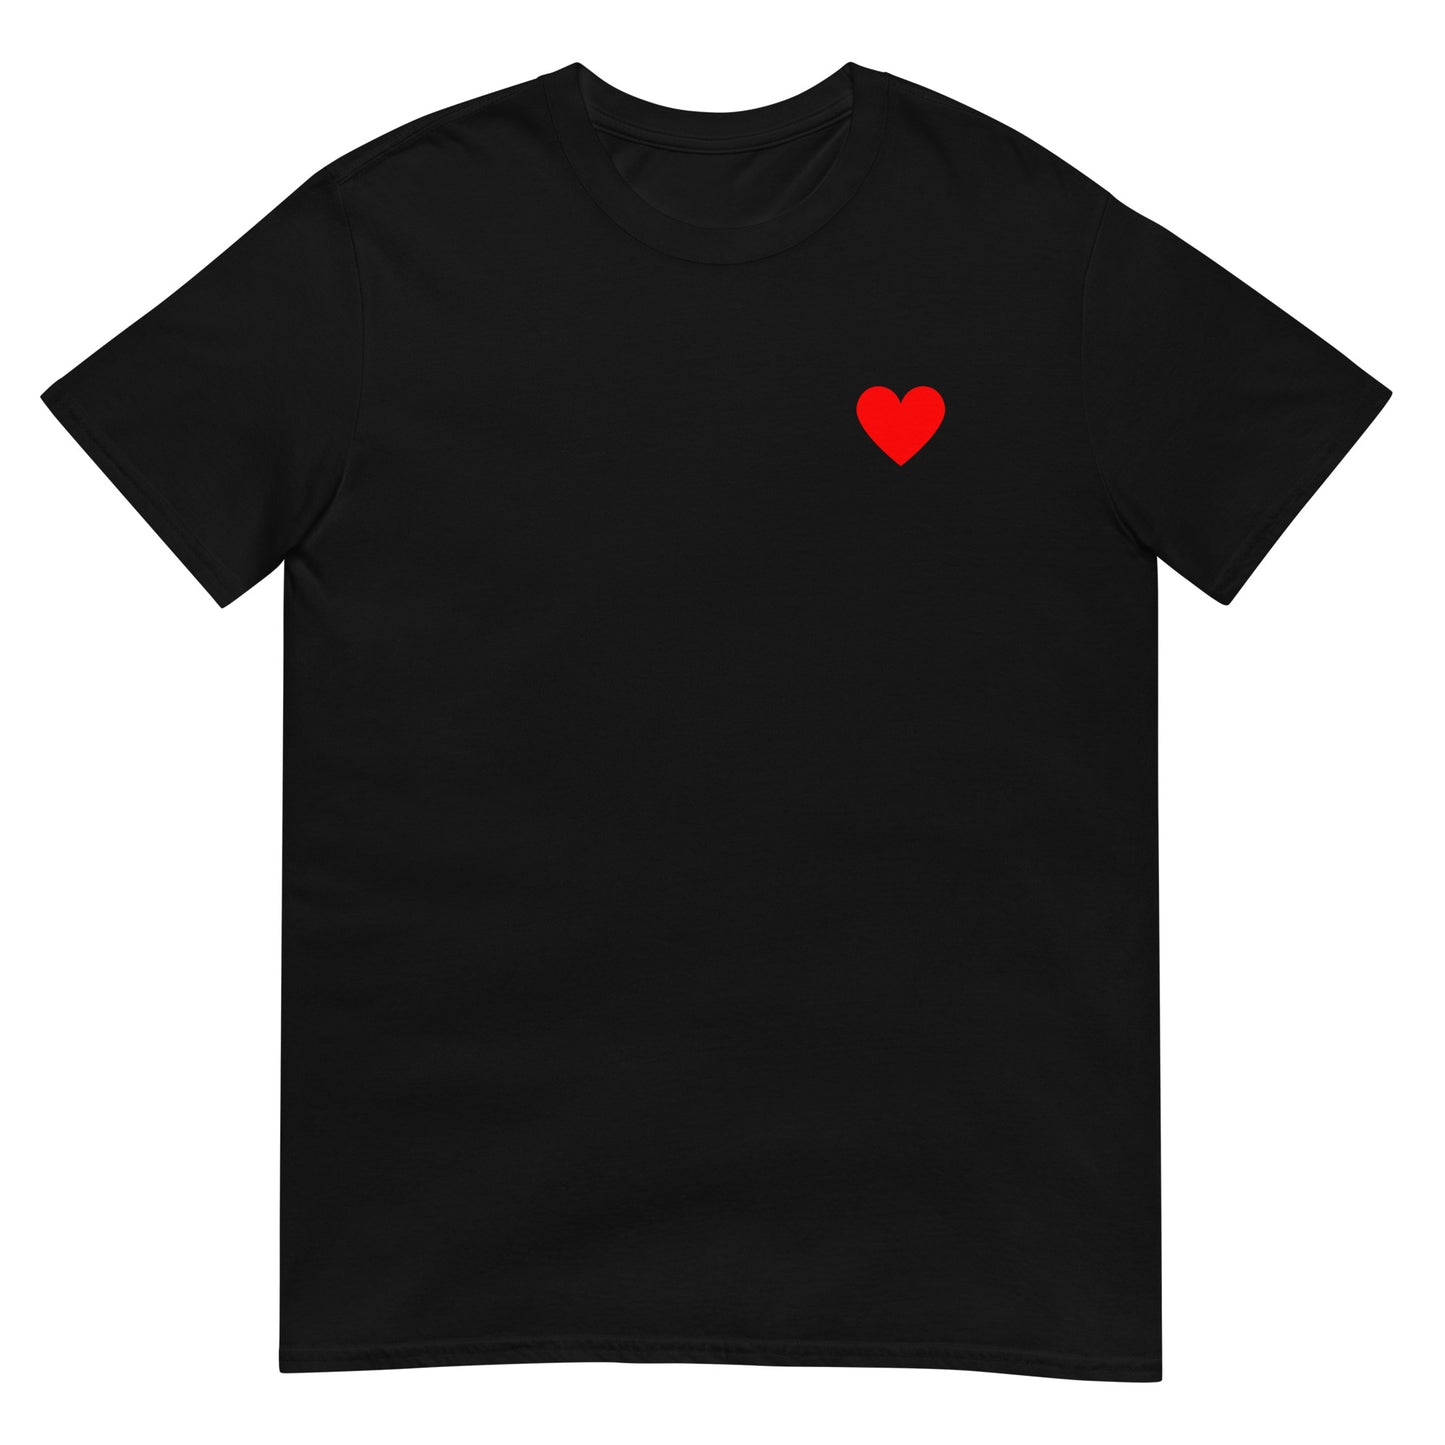 Unisex t-shirt: Red heart